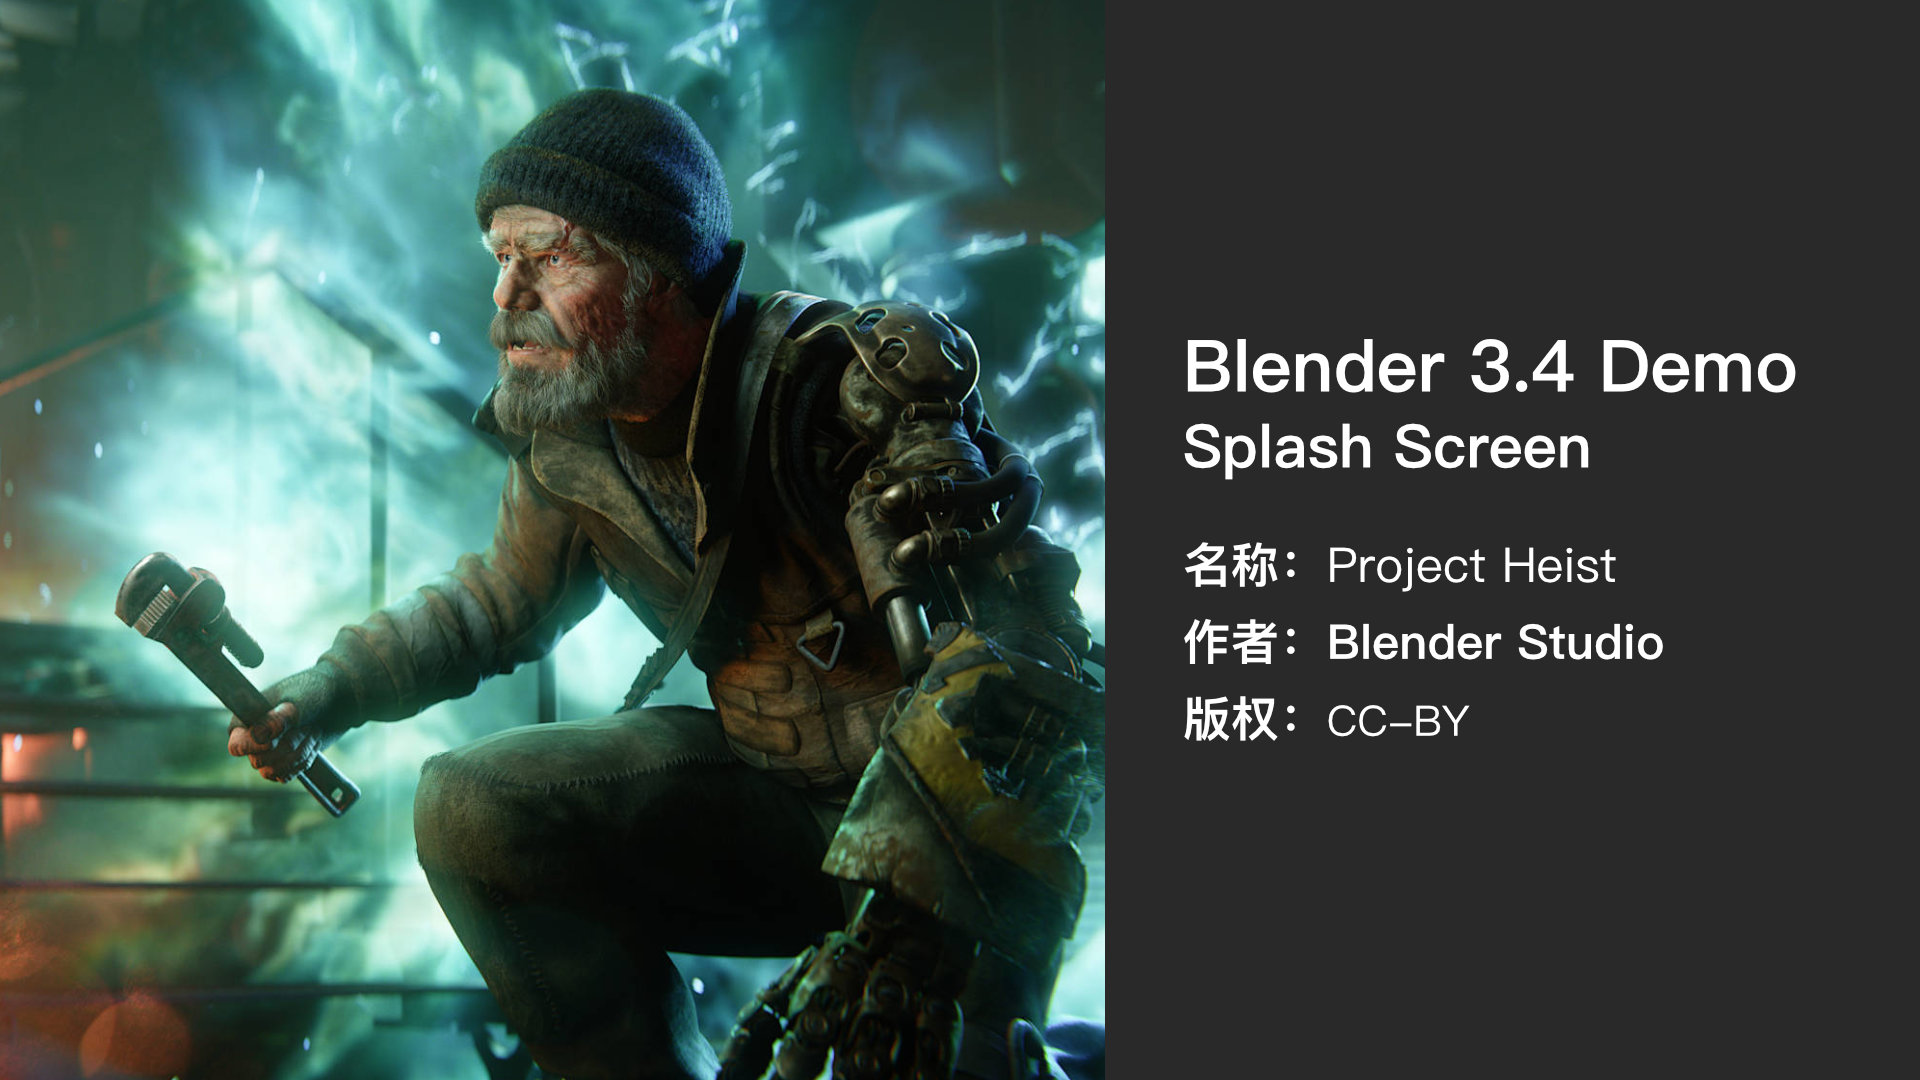 Blender 3.4 Splash Screen.jpg